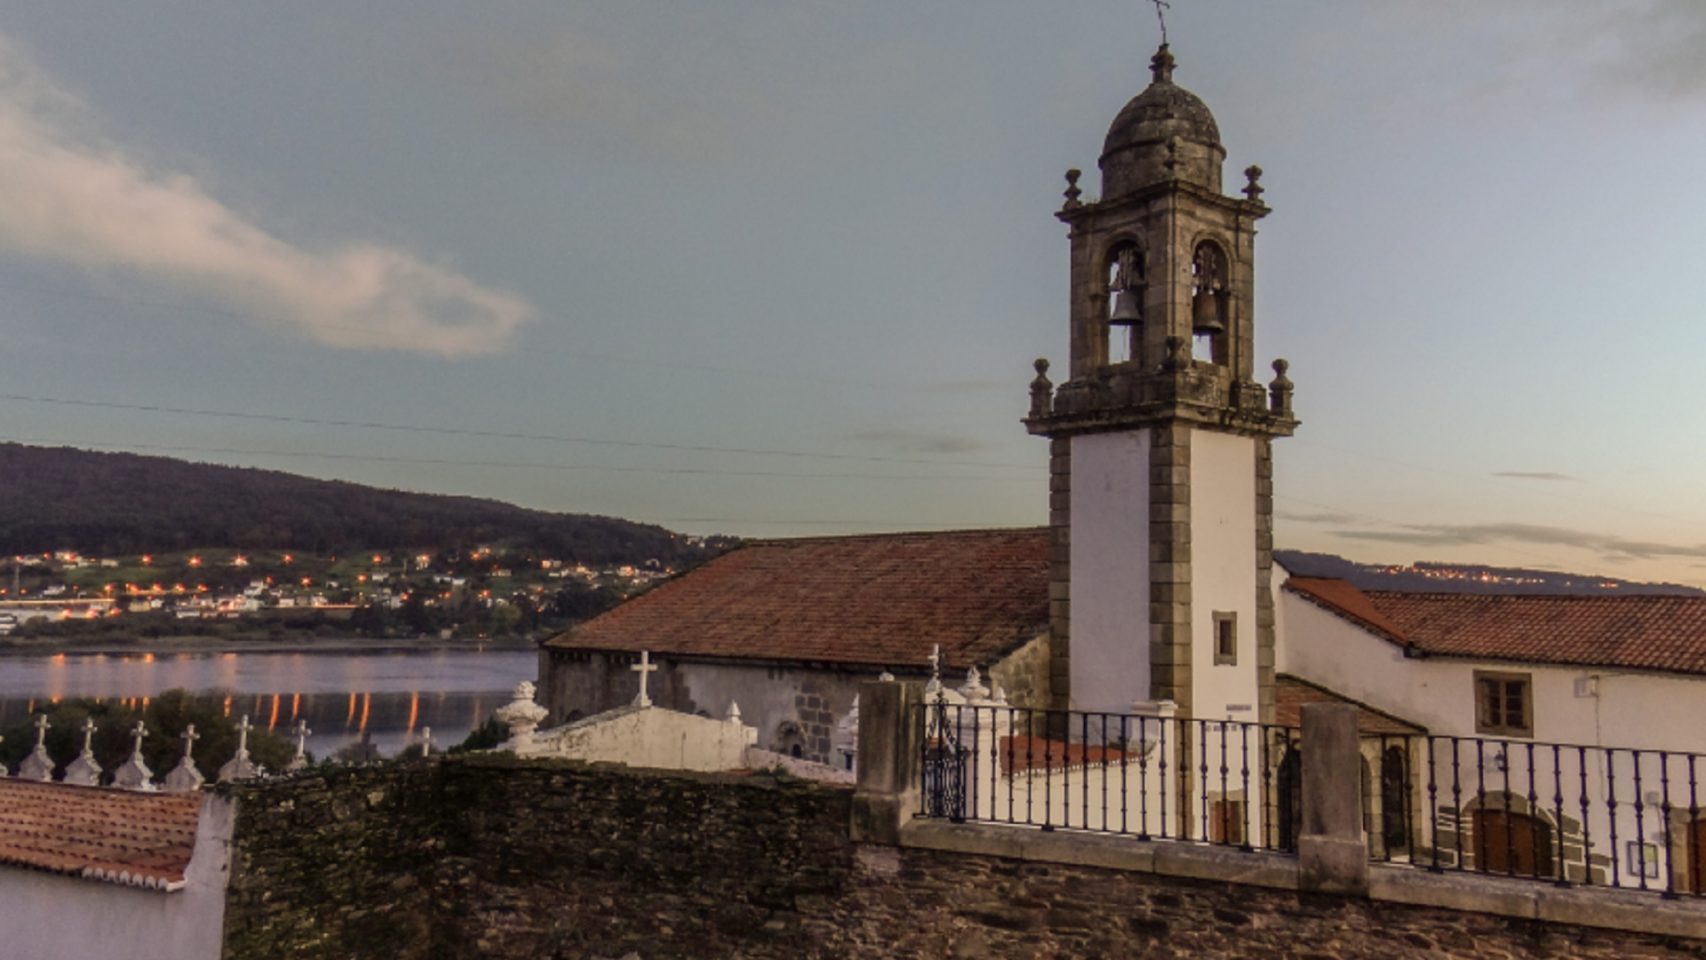 Foto de archivo del monasterio de San Martín do Couto, en Narón.